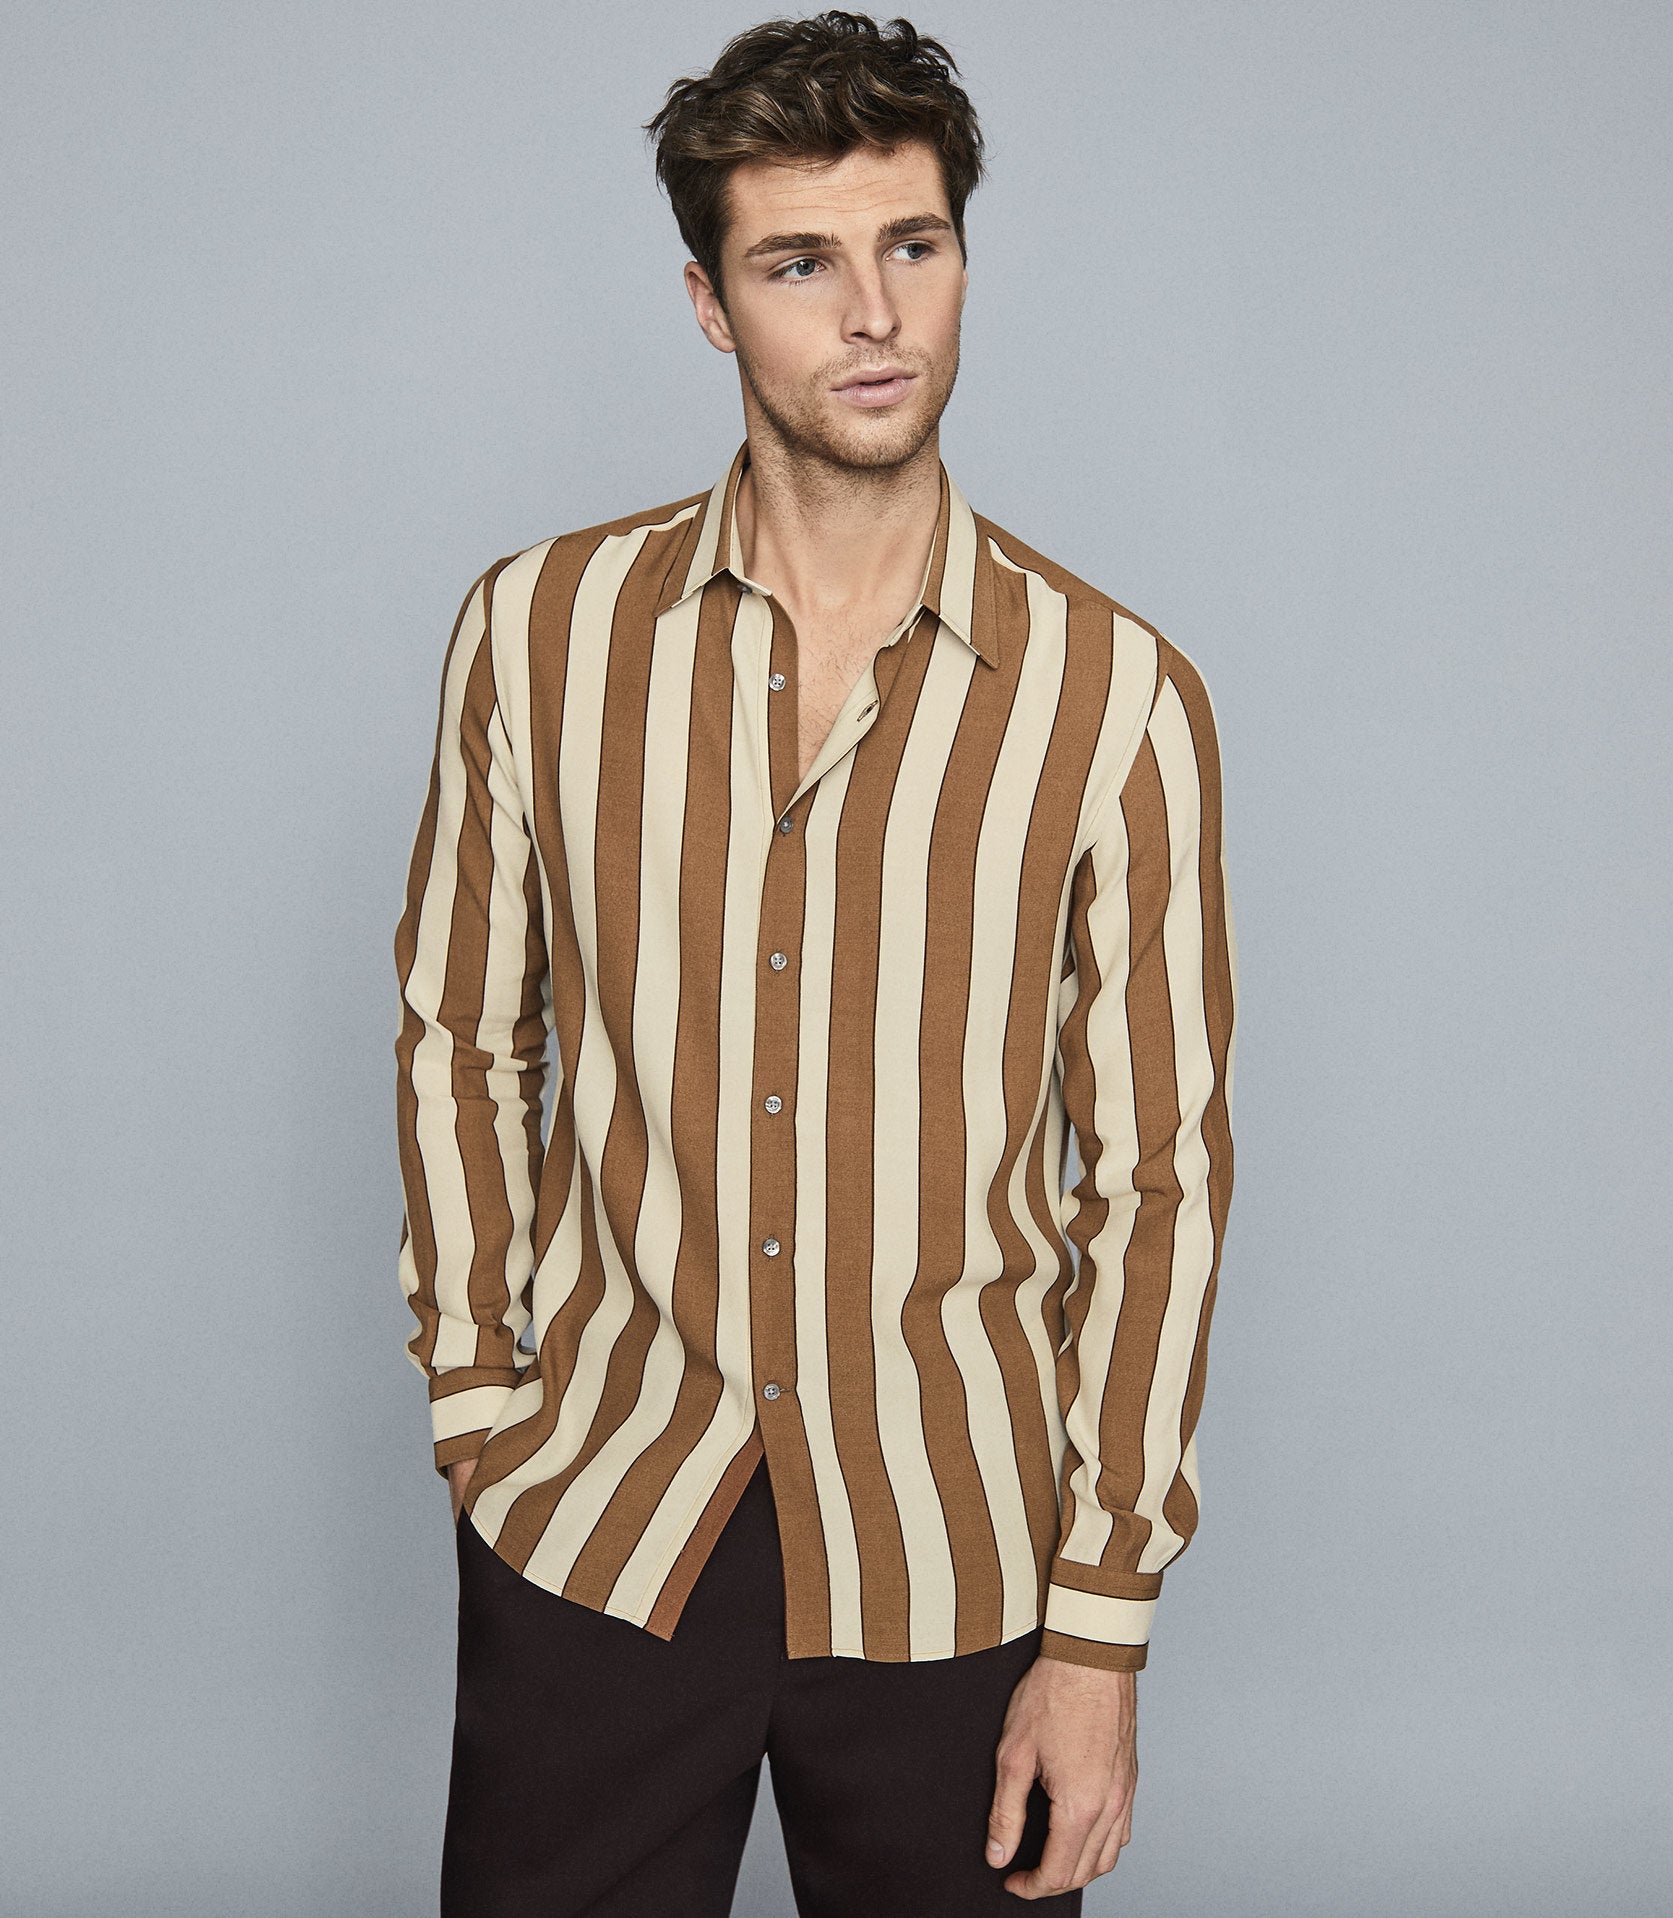 men's fashion - Vertical Stripes